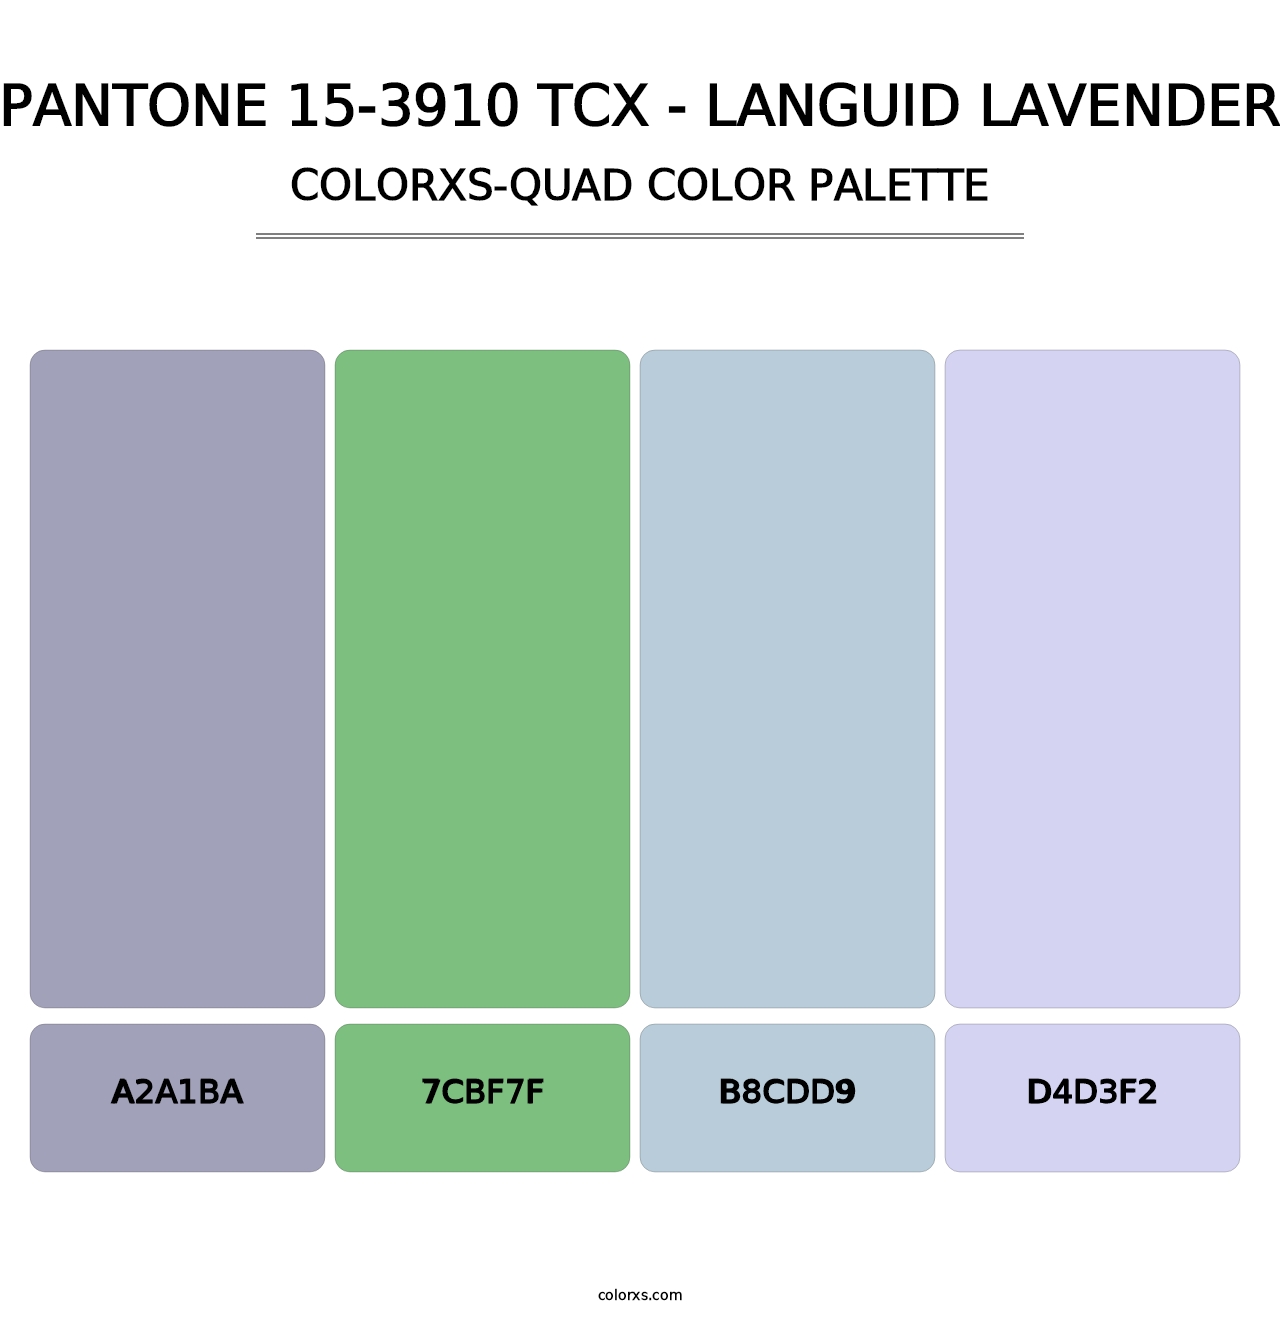 PANTONE 15-3910 TCX - Languid Lavender - Colorxs Quad Palette